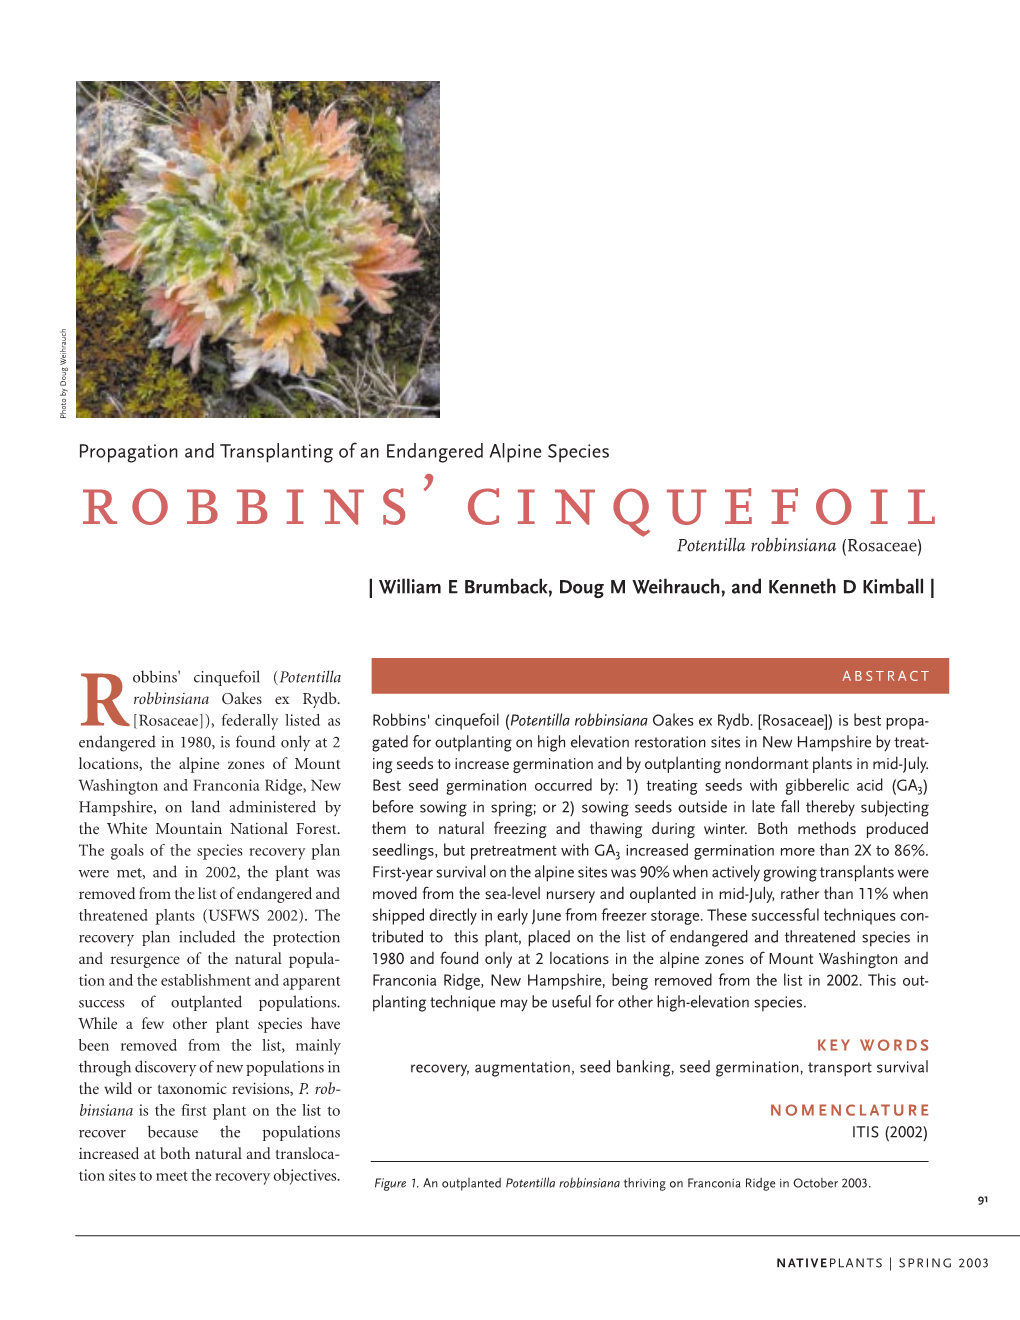 Robbins' Cinquefoil (Potentilla Robbinsiana Oakes Ex Rydb